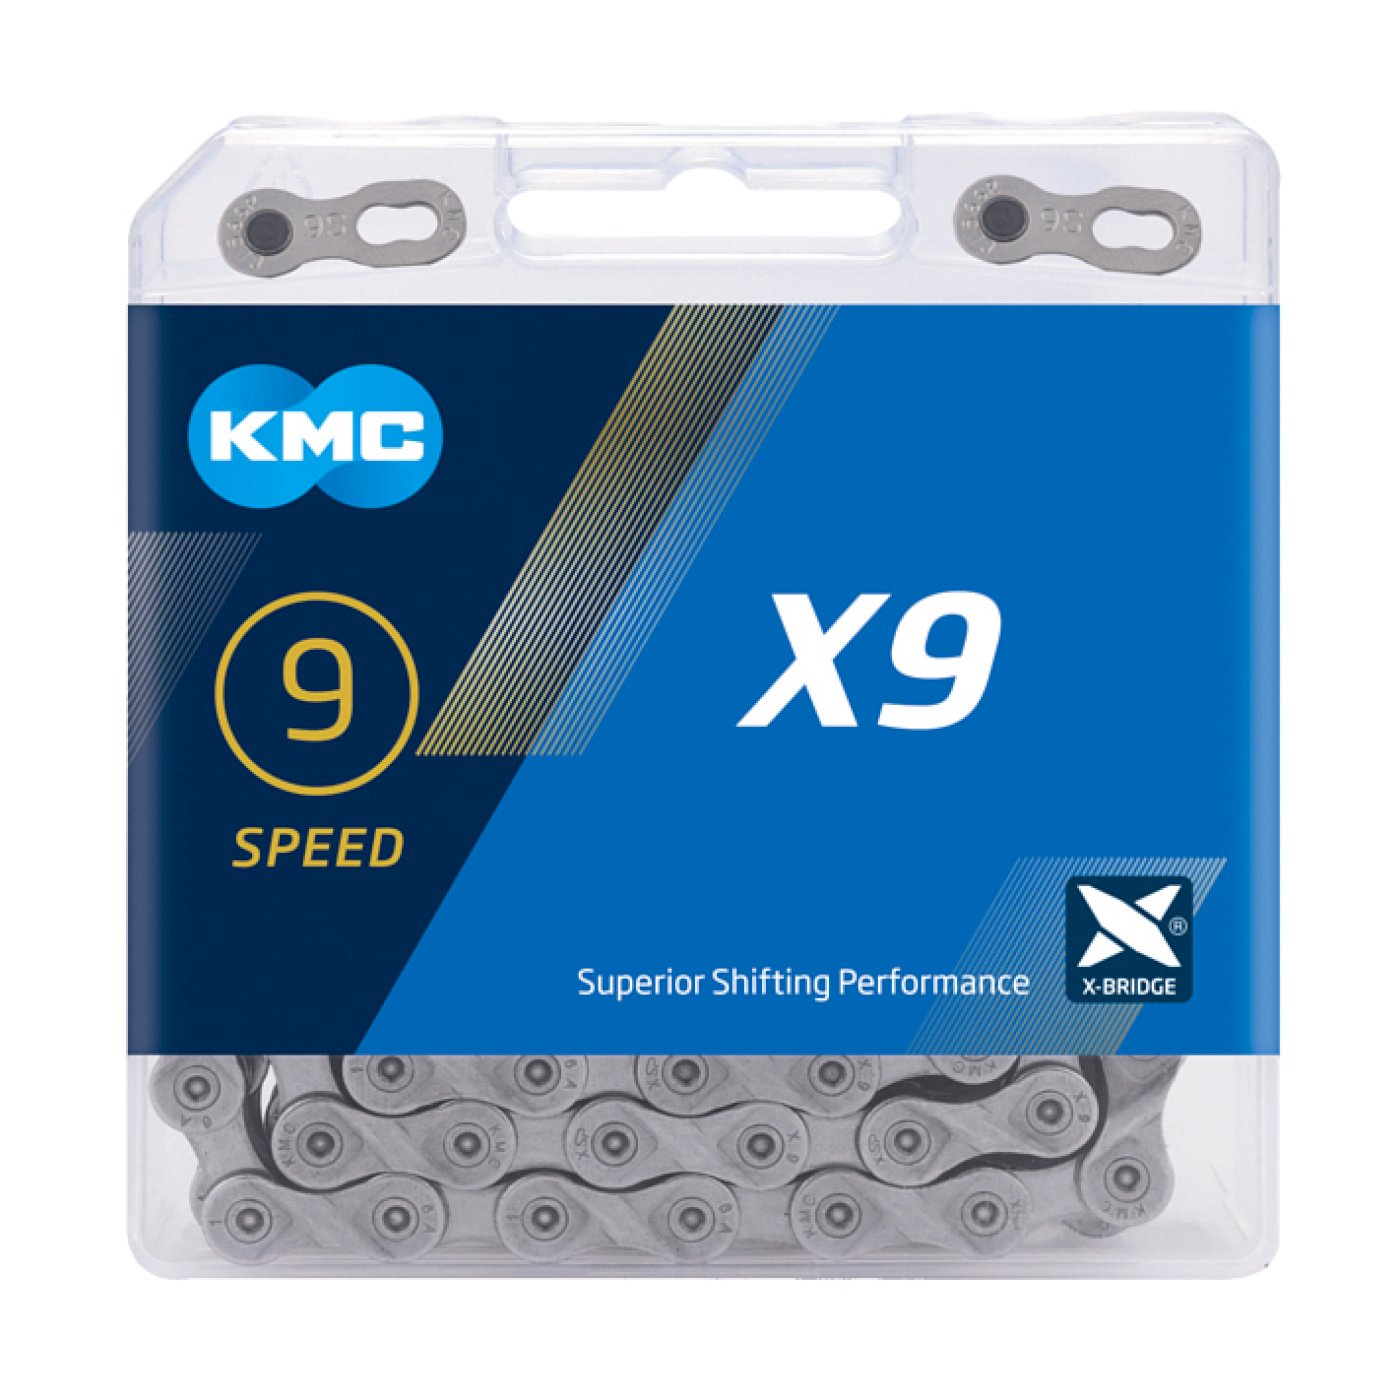 KMC Fahrrad Kette X9 9-fach, grau 114 Glieder 1/2x11/128